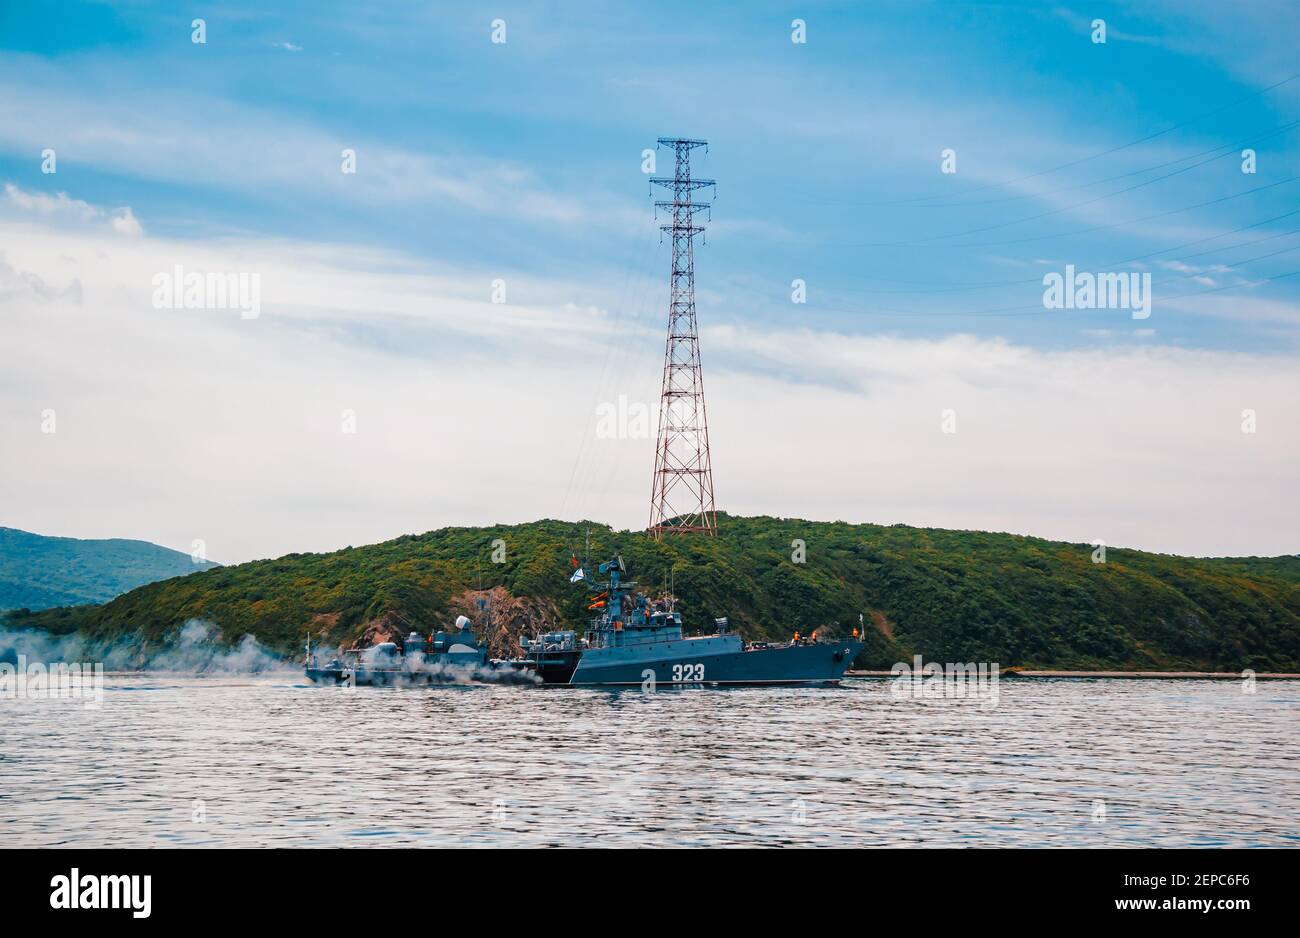 Russian corvette. Anti-submarine warfare in the East Sea. A Russian military ship. Stock Photo